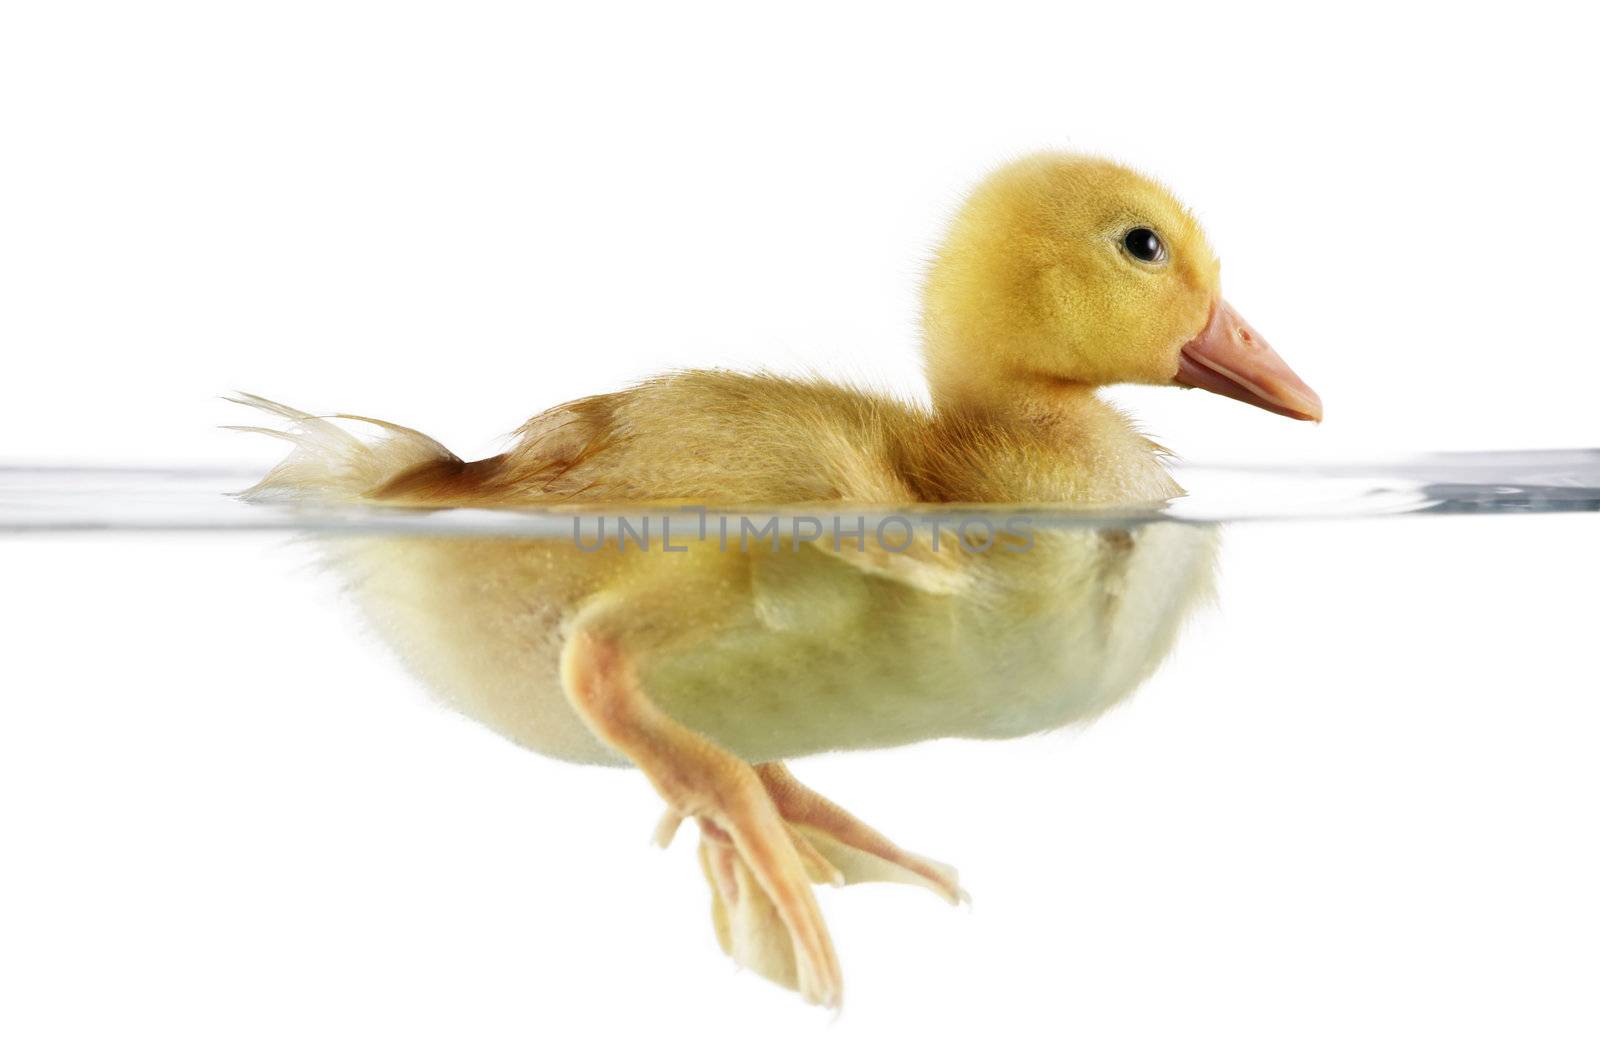 Cute duckling in water by jarenwicklund